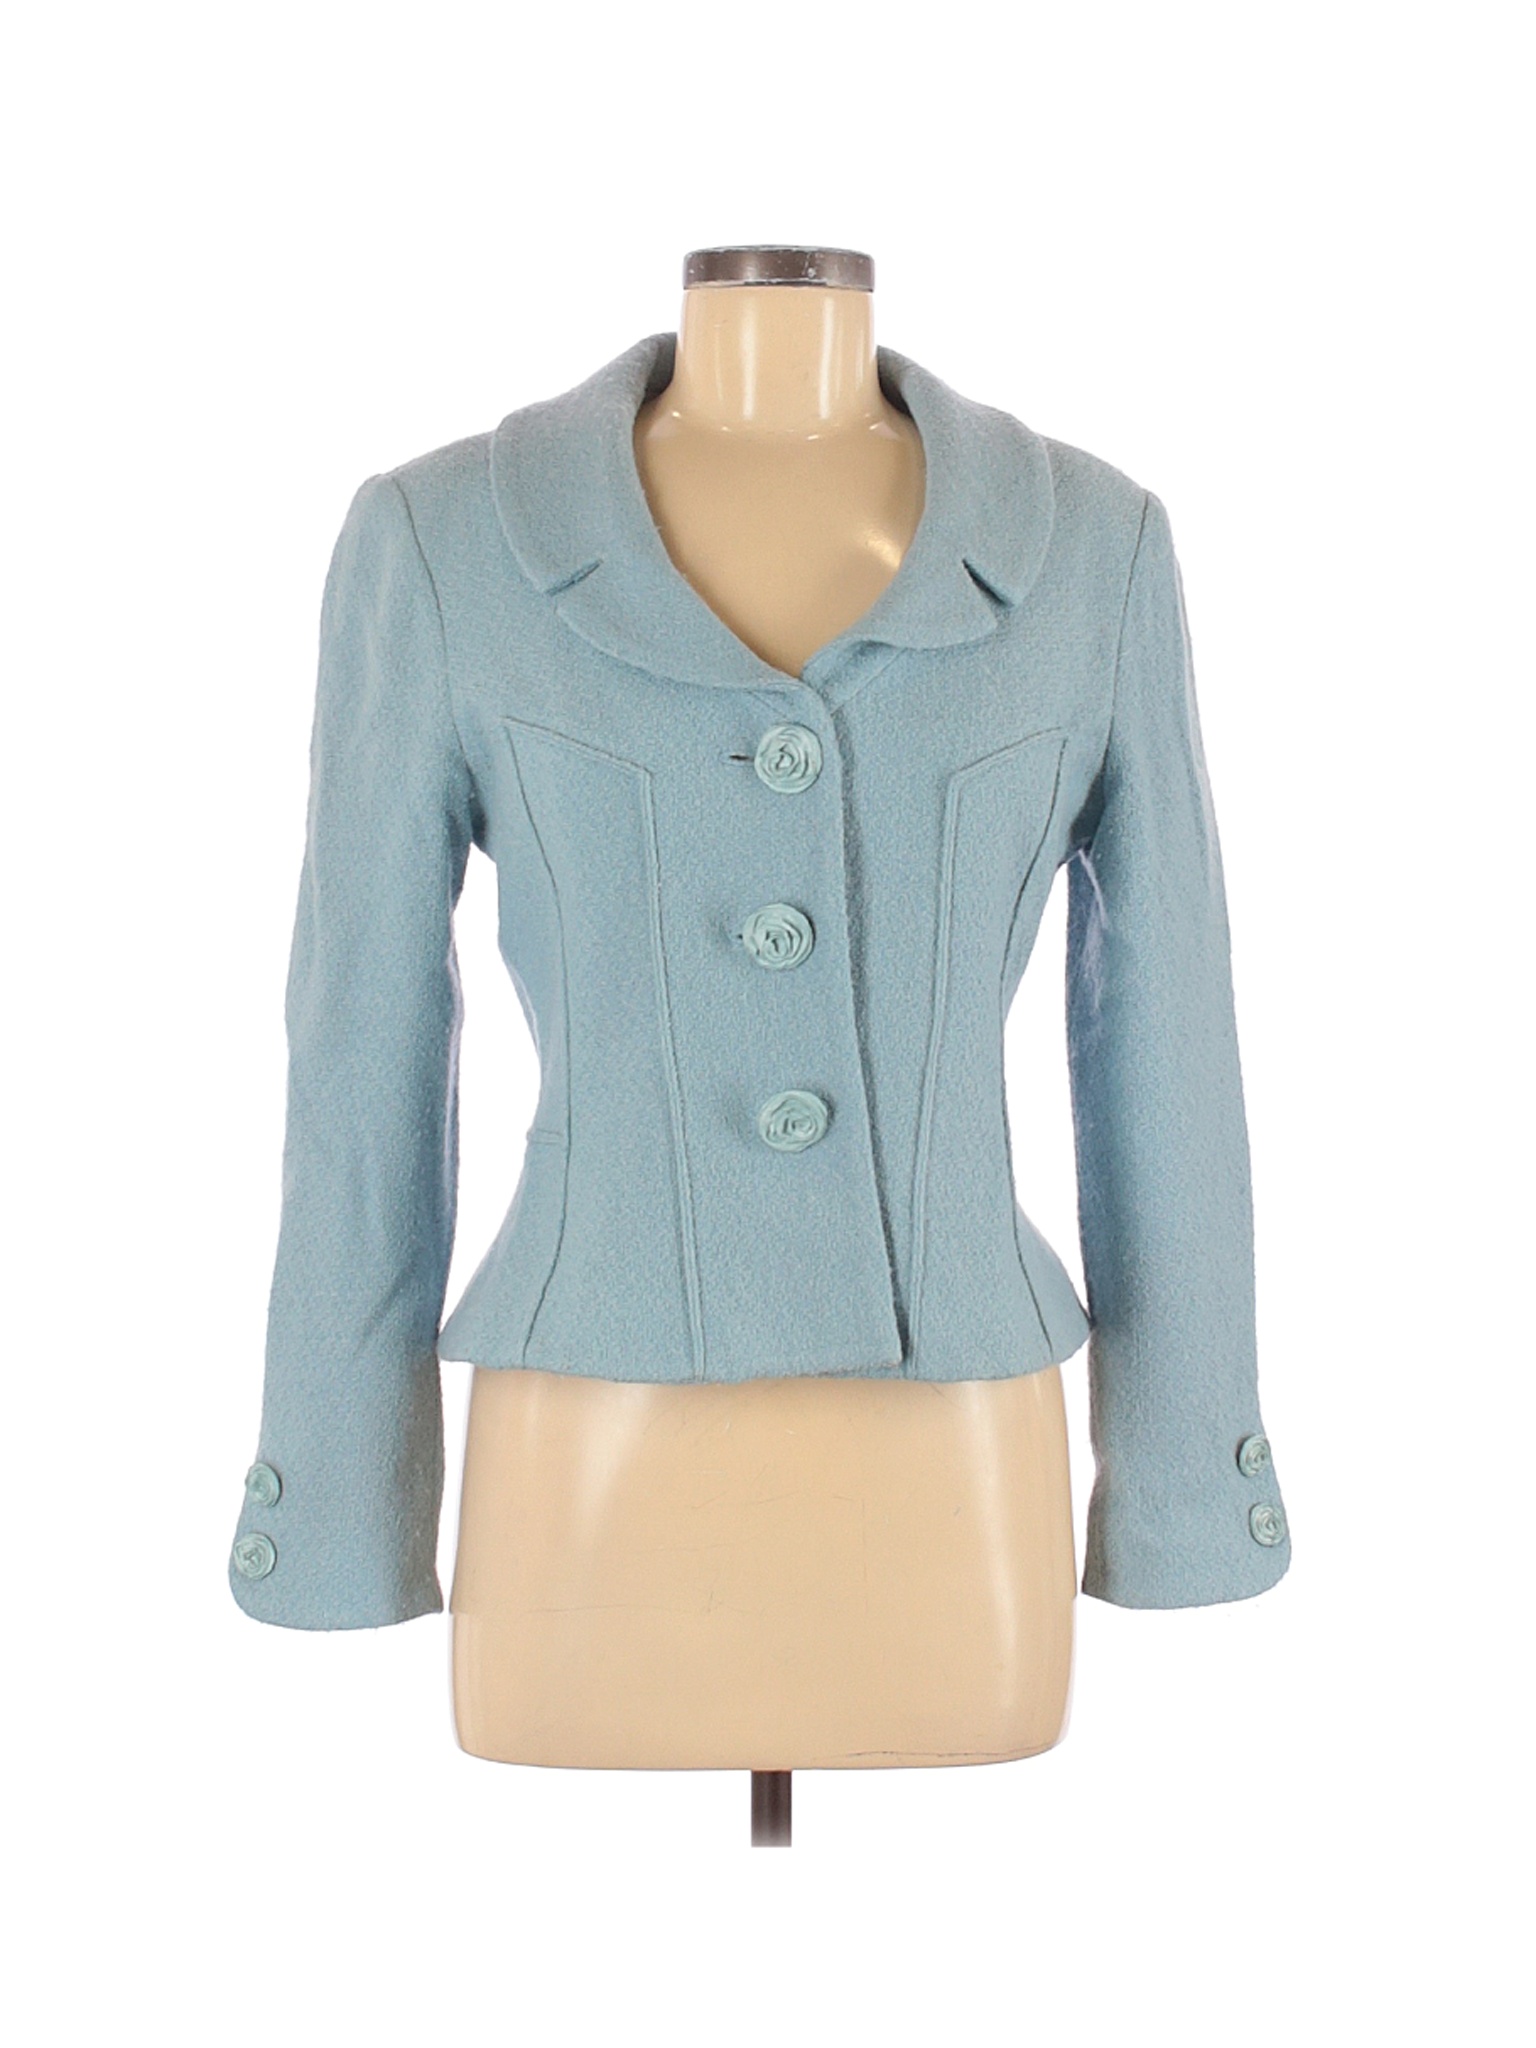 Saks Fifth Avenue Women Blue Wool Blazer 6 | eBay